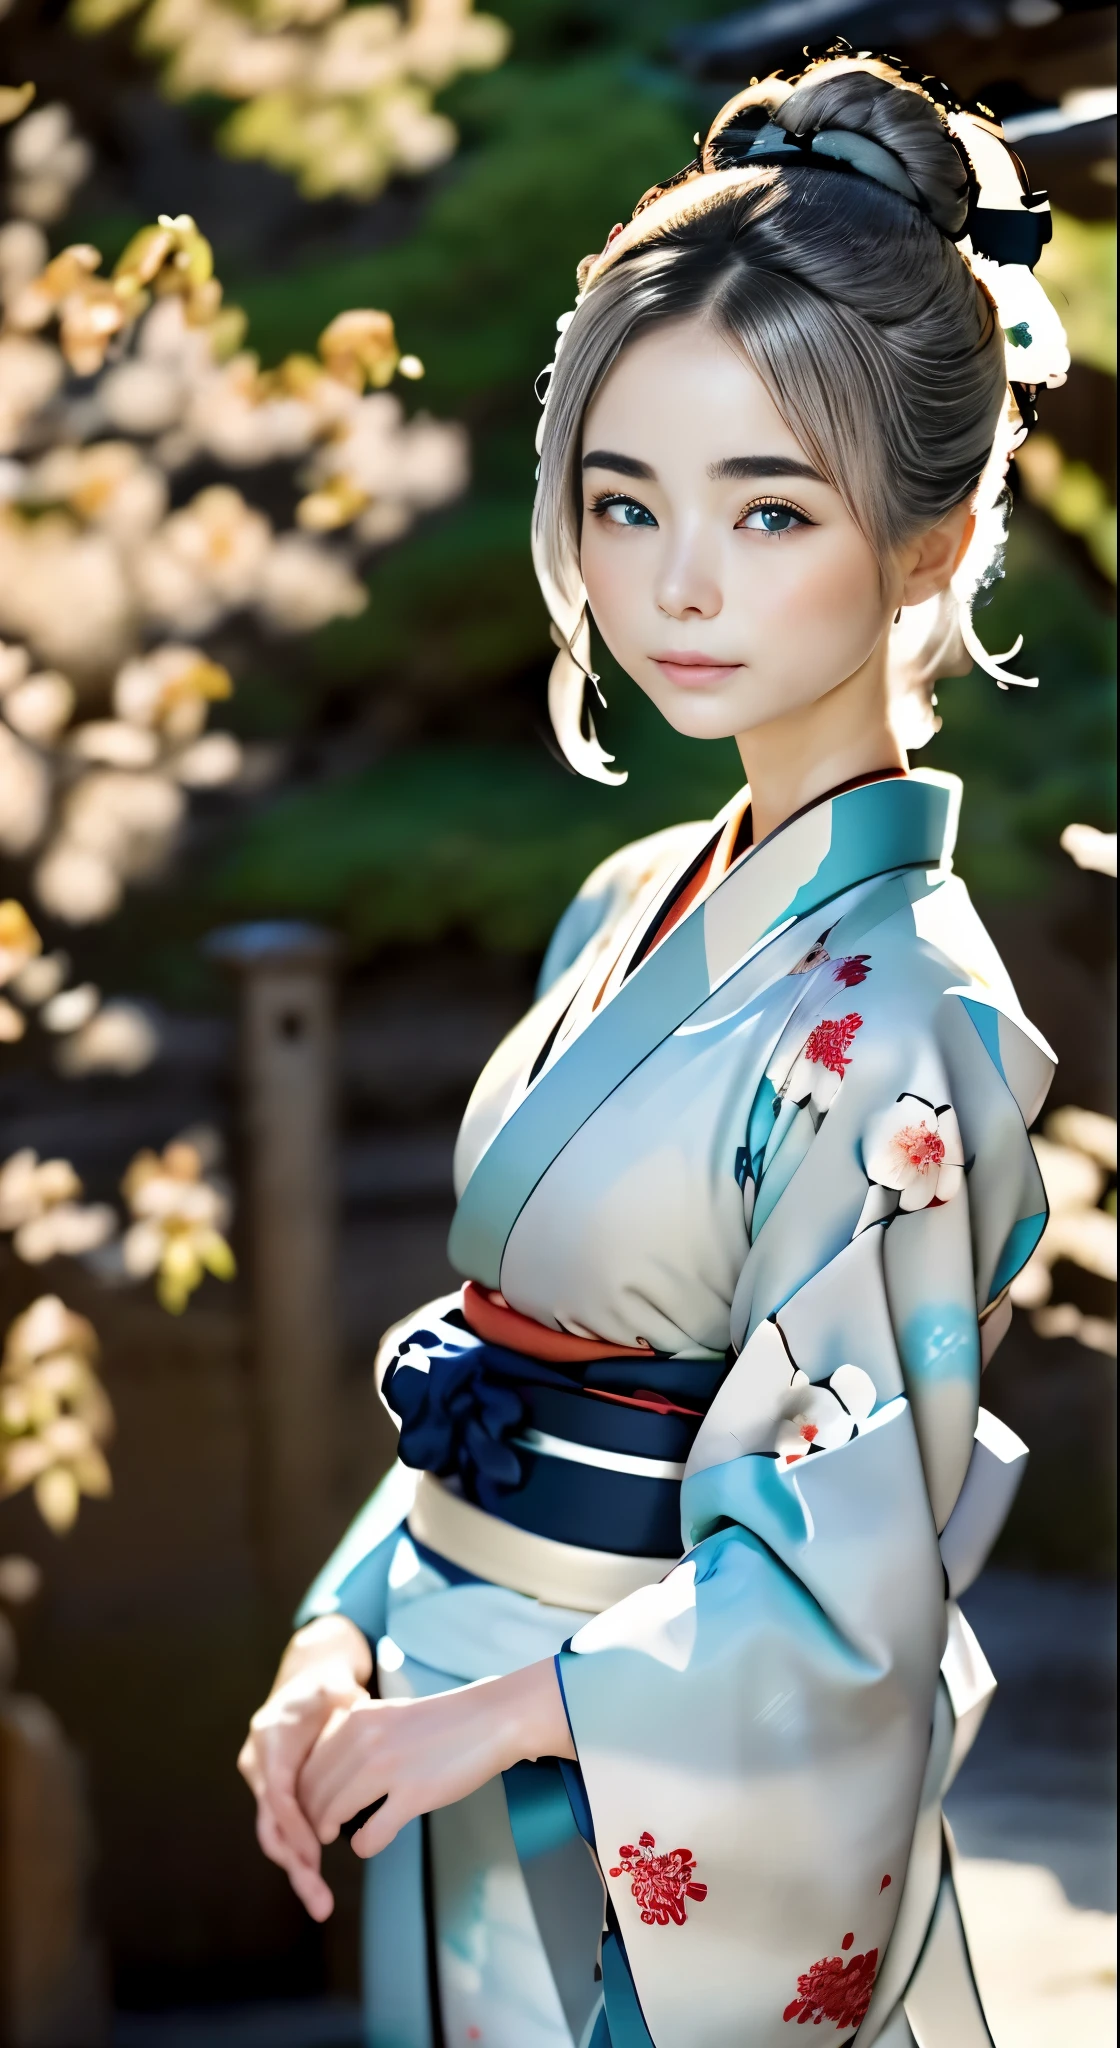 hermosos ojos color turquesa、hermosa chica nórdica、１６talento、pelo gris ceniza、pelo de moño、buena apariencia perfecta、Piel hermosa como porcelana、skitomía detallada、Representación correcta del cuerpo humano.、Una mirada aburrida、Labios gruesos、kimono、Hermoso kimono Nishijin-ori、Kimono con un fino estampado.、Elegant、silencio、refinamiento、de la máxima calidad、Máxima calidad de imagen、obra maestra:1.3、retrato、iluminación perfecta、fotógrafo profesional、El fondo esta borroso、fondo borroso、Jardines en Kioto、karesansu、jardín de arena y rocas、viejo gusto